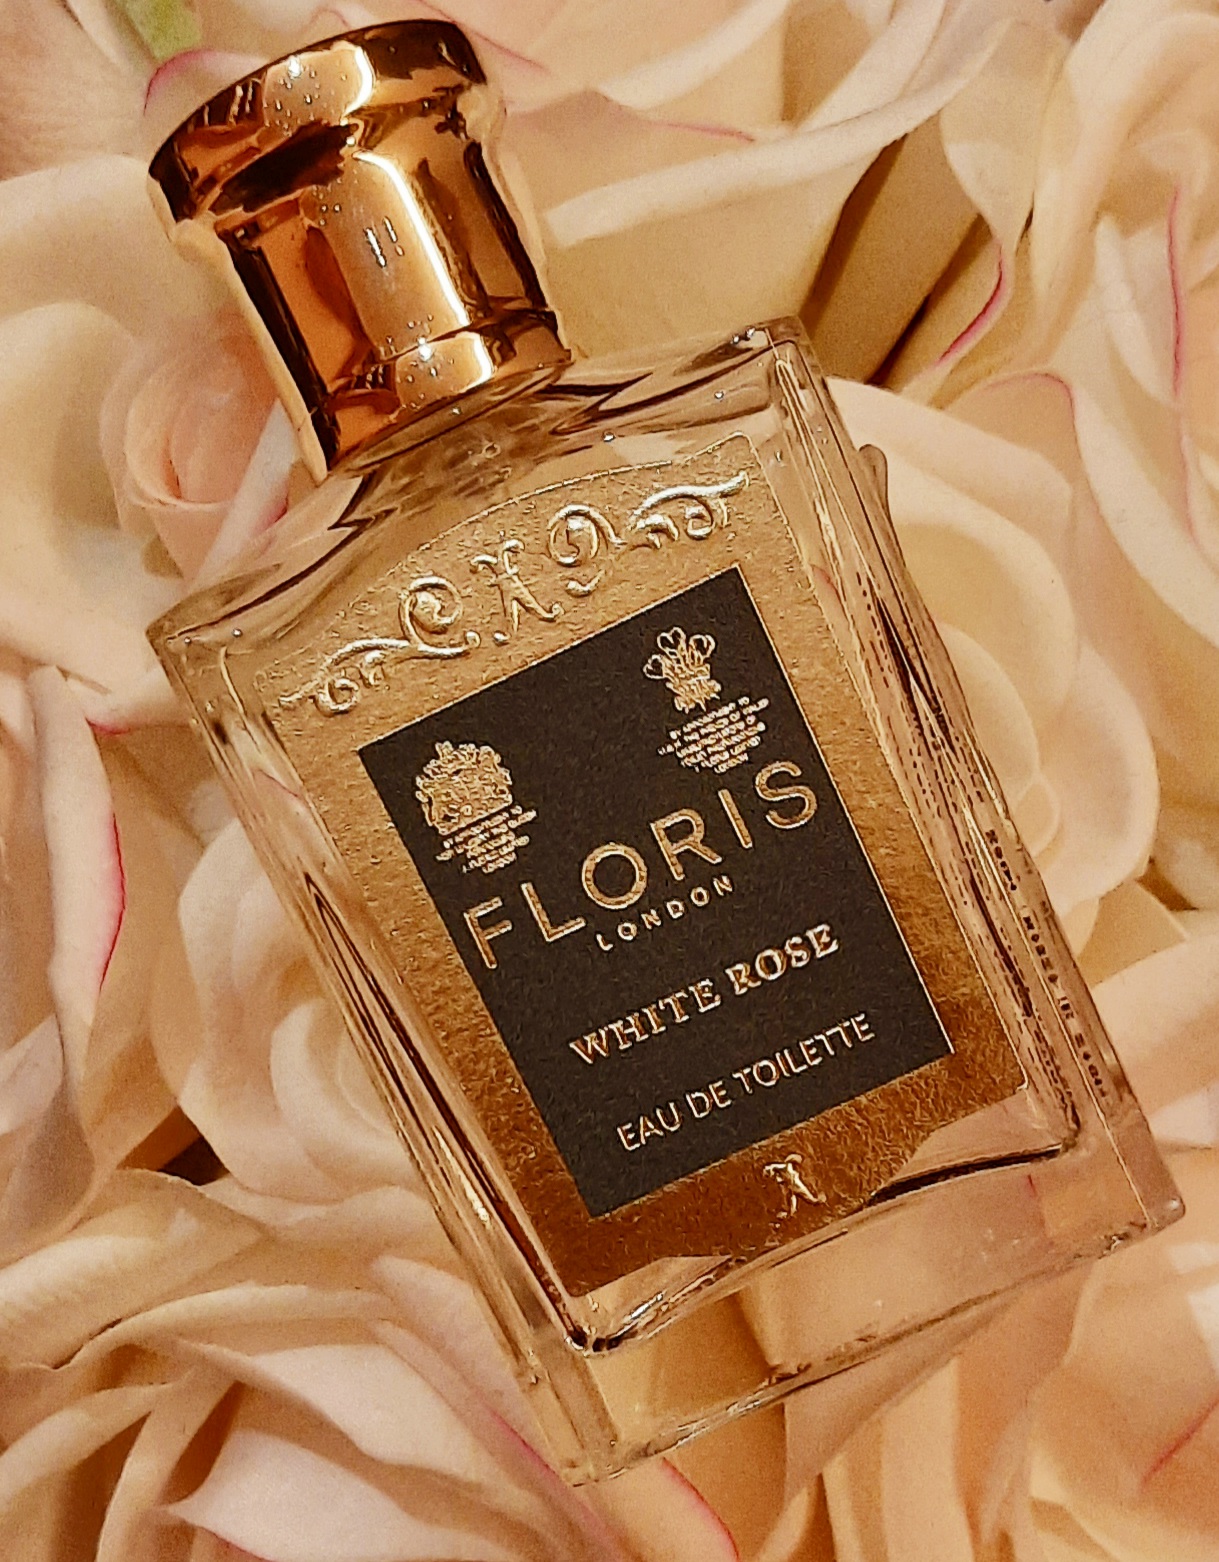 Floris - White Rose